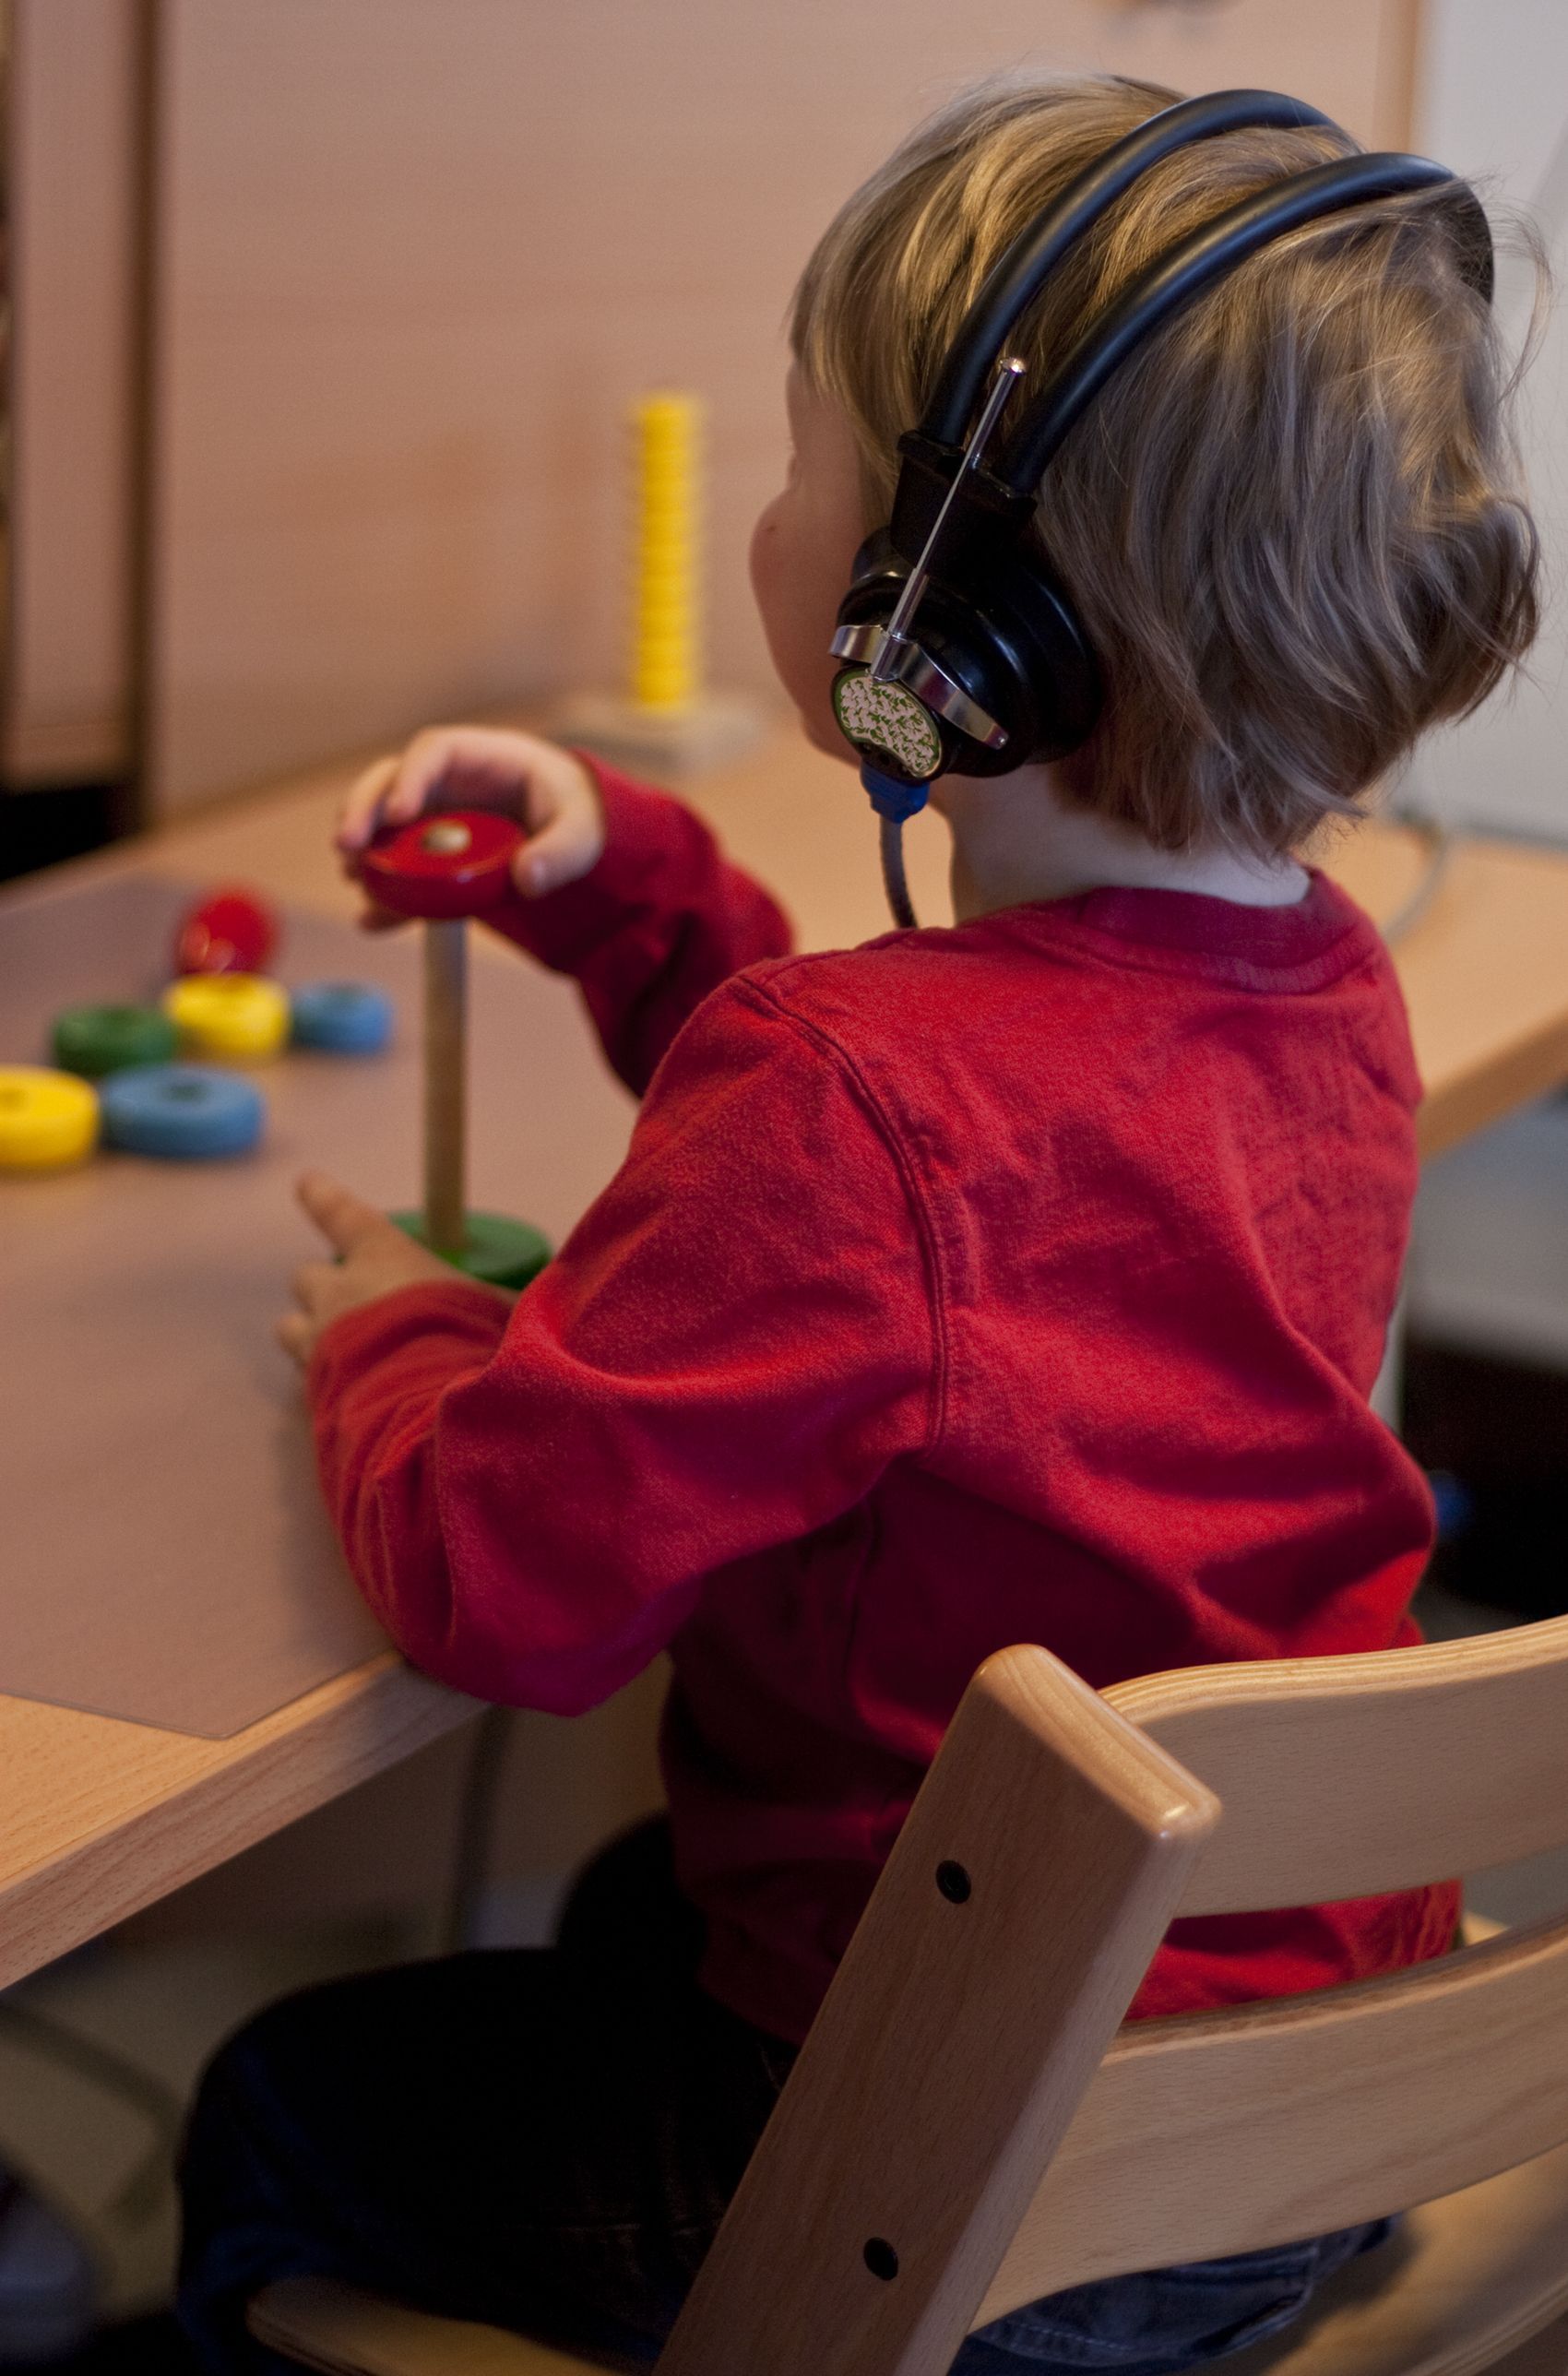 Γιατί η σωστή παιδική ακοή είναι σημαντική;